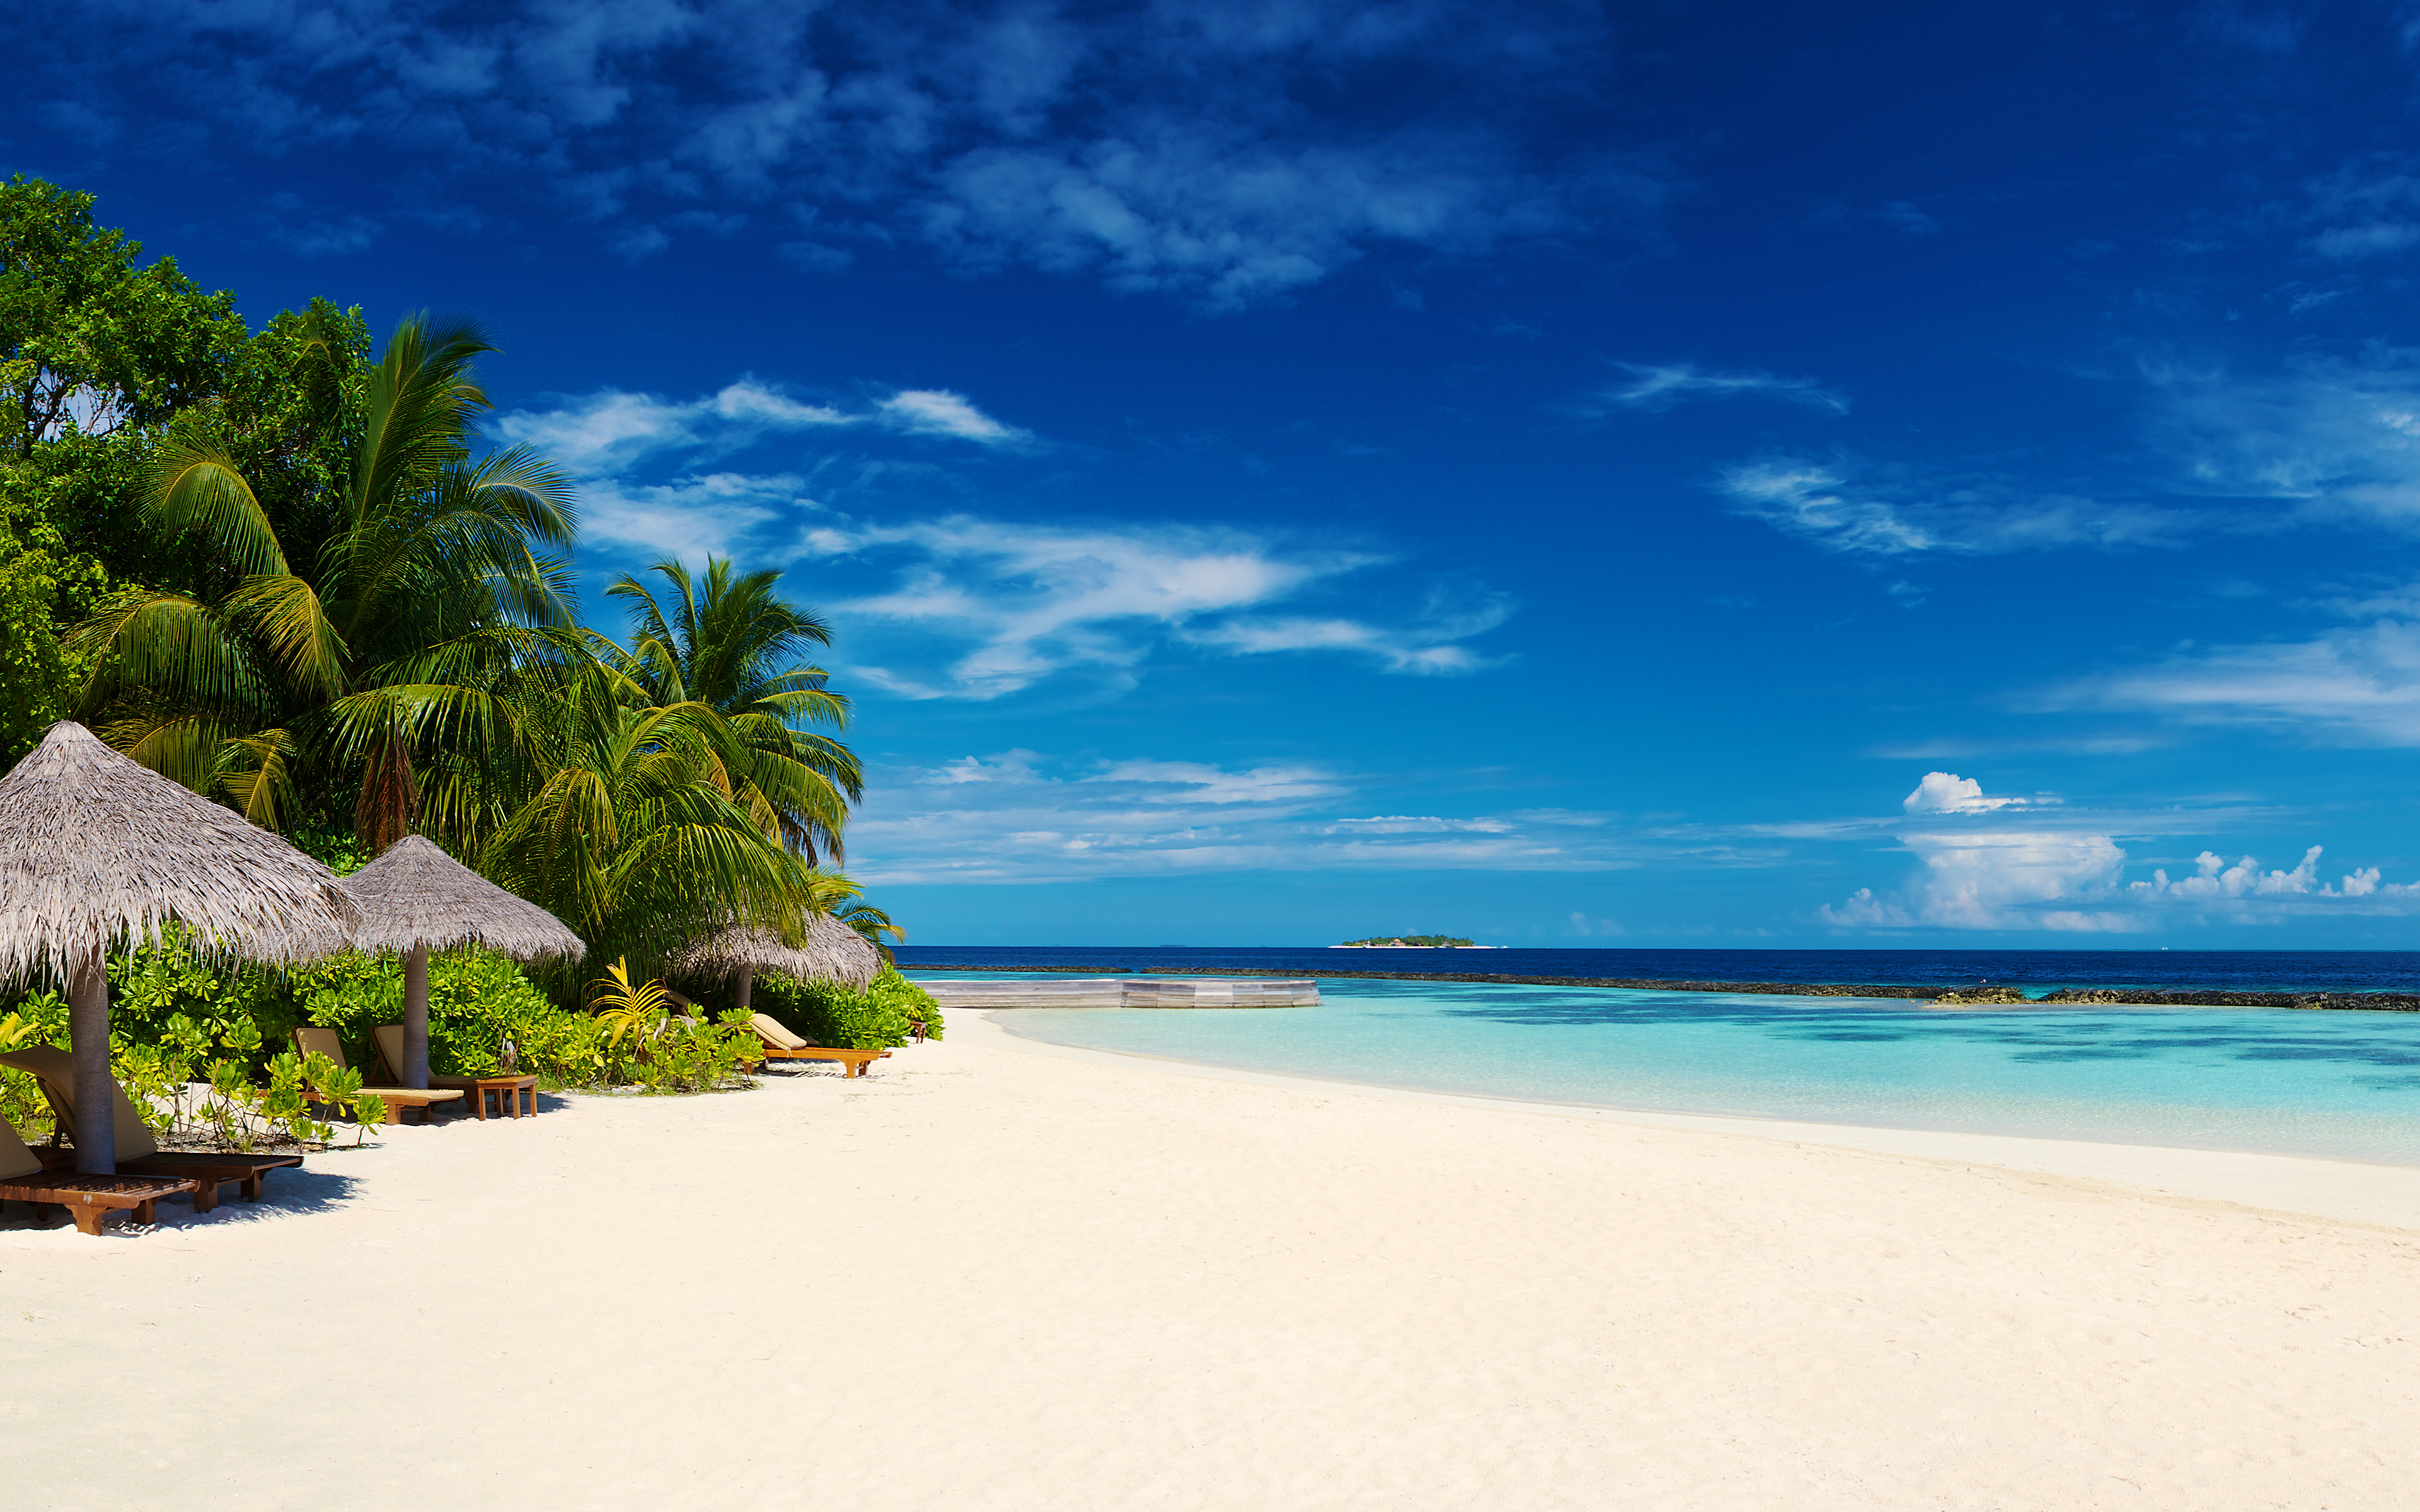 Tropical Maldives Beach 4K